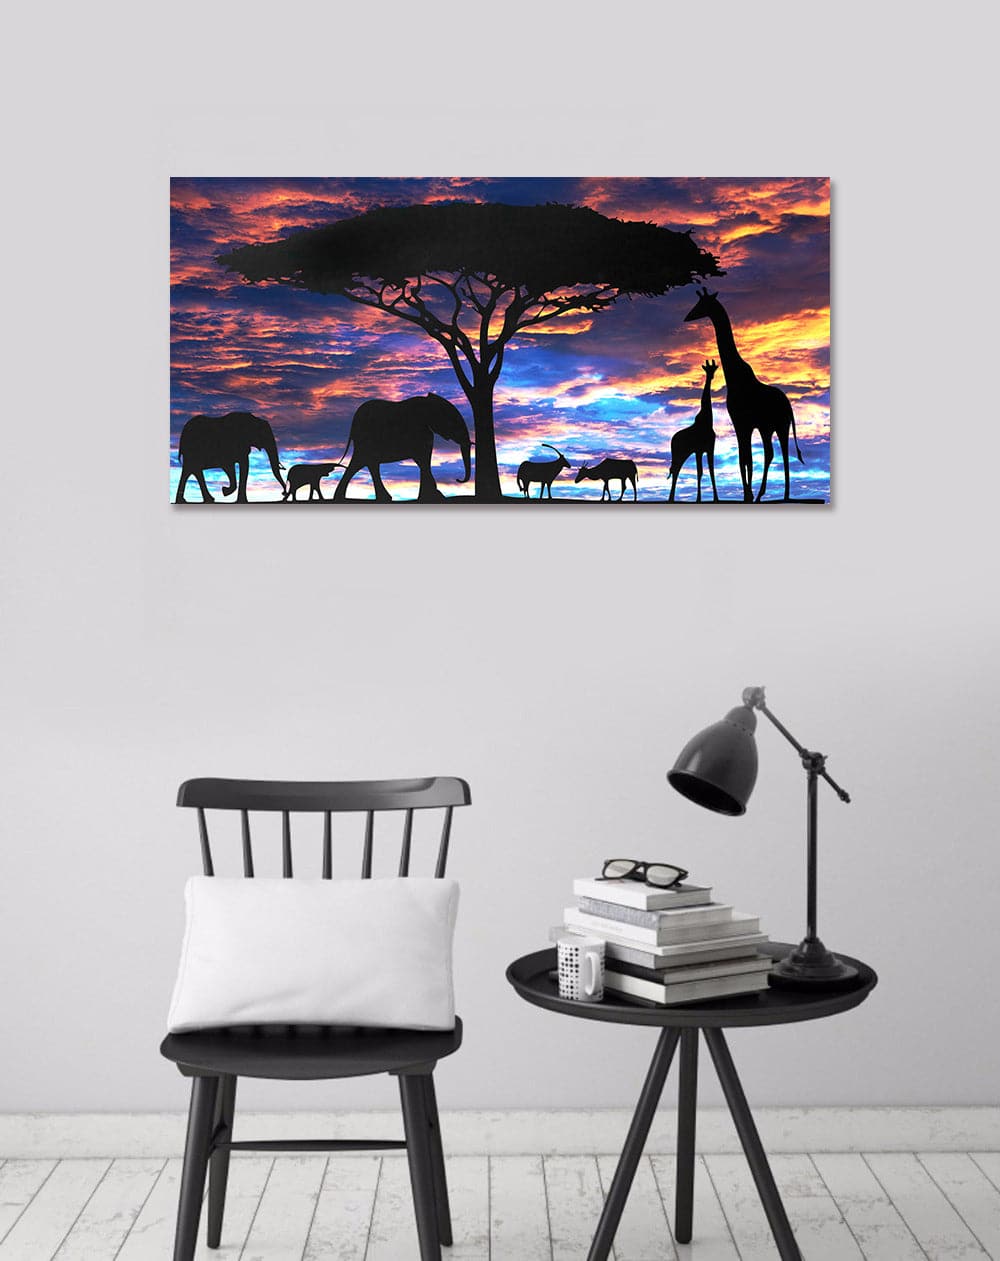 Framed 1 Panel - Africa